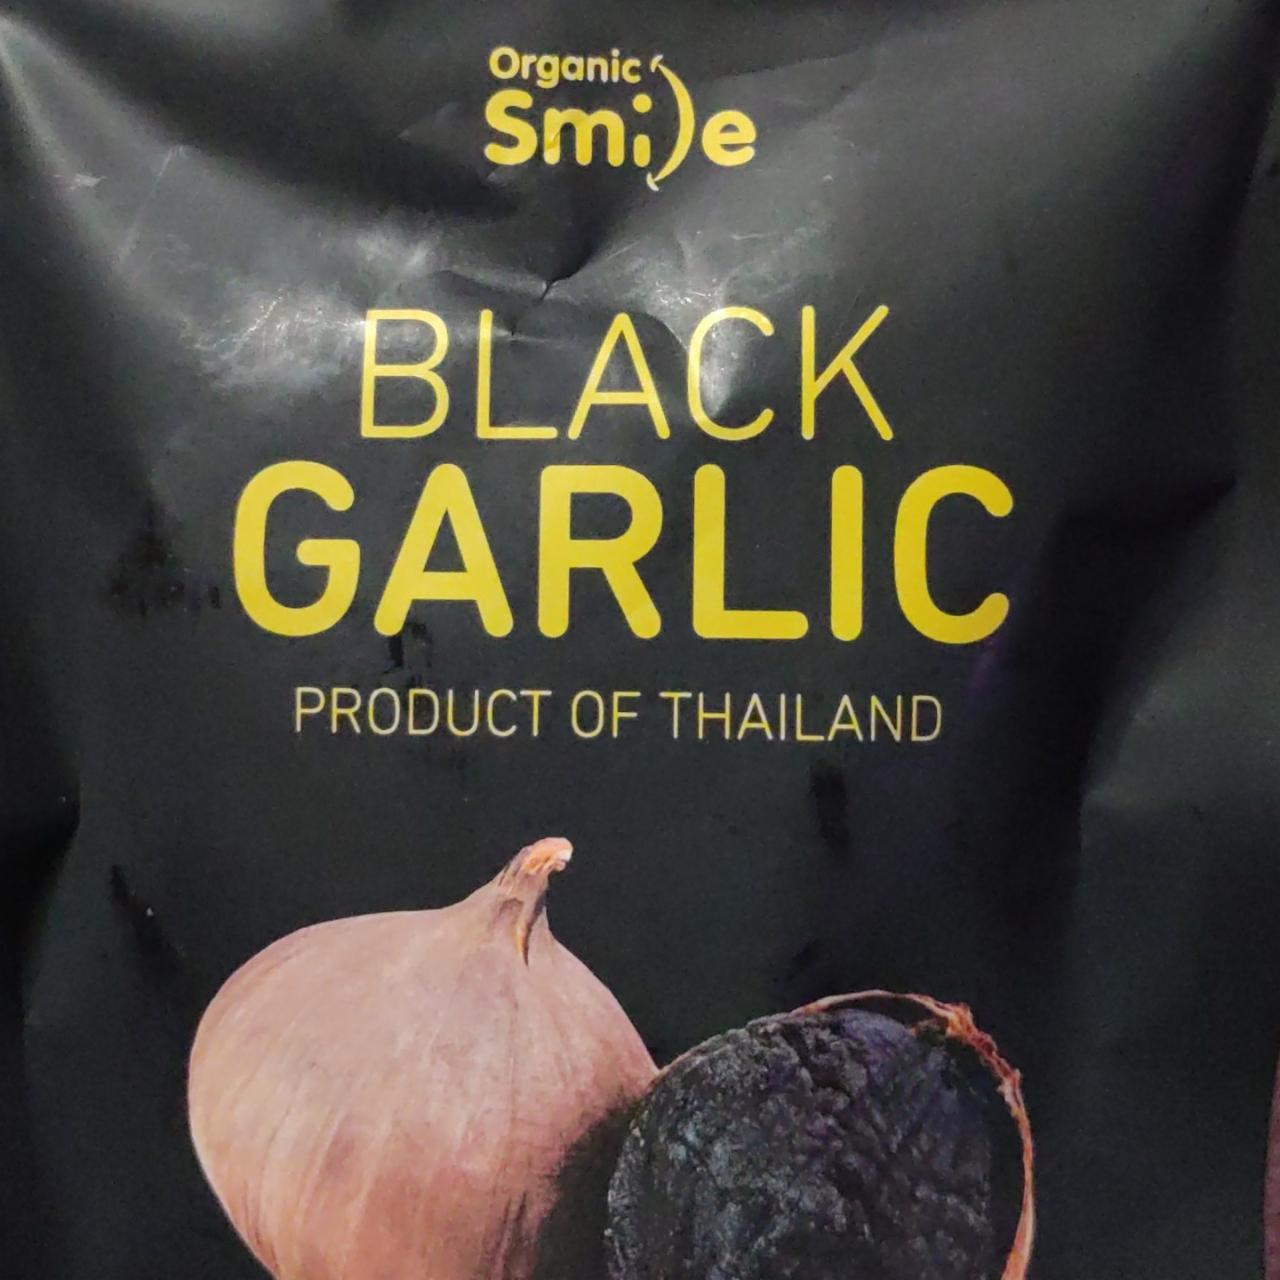 Fotografie - Black garlic Smile organic